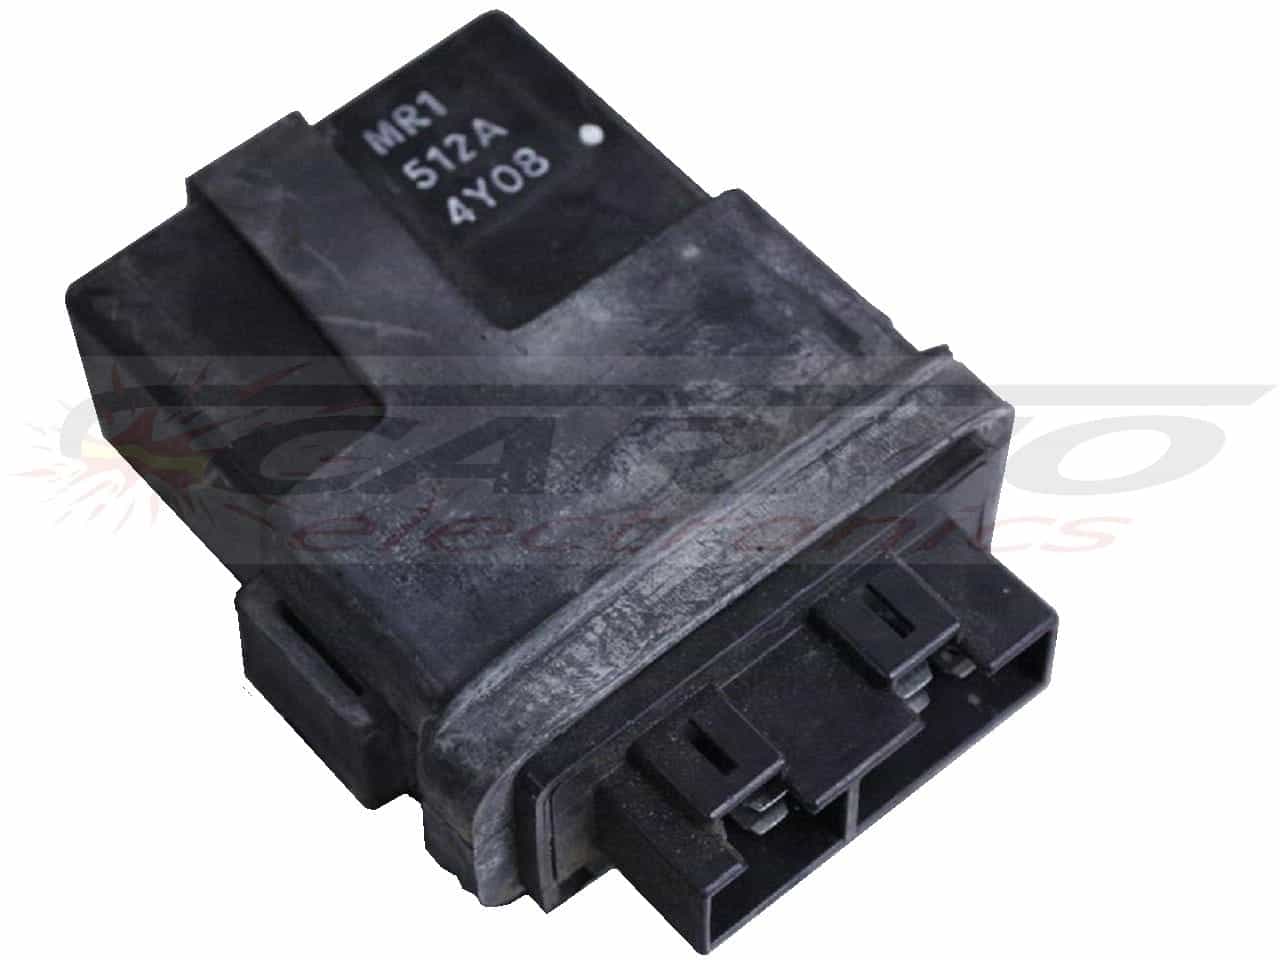 VT600 C VT600C Shadow PC21 TCI CDI dispositif de commande boîte noire (MR1, 512A)